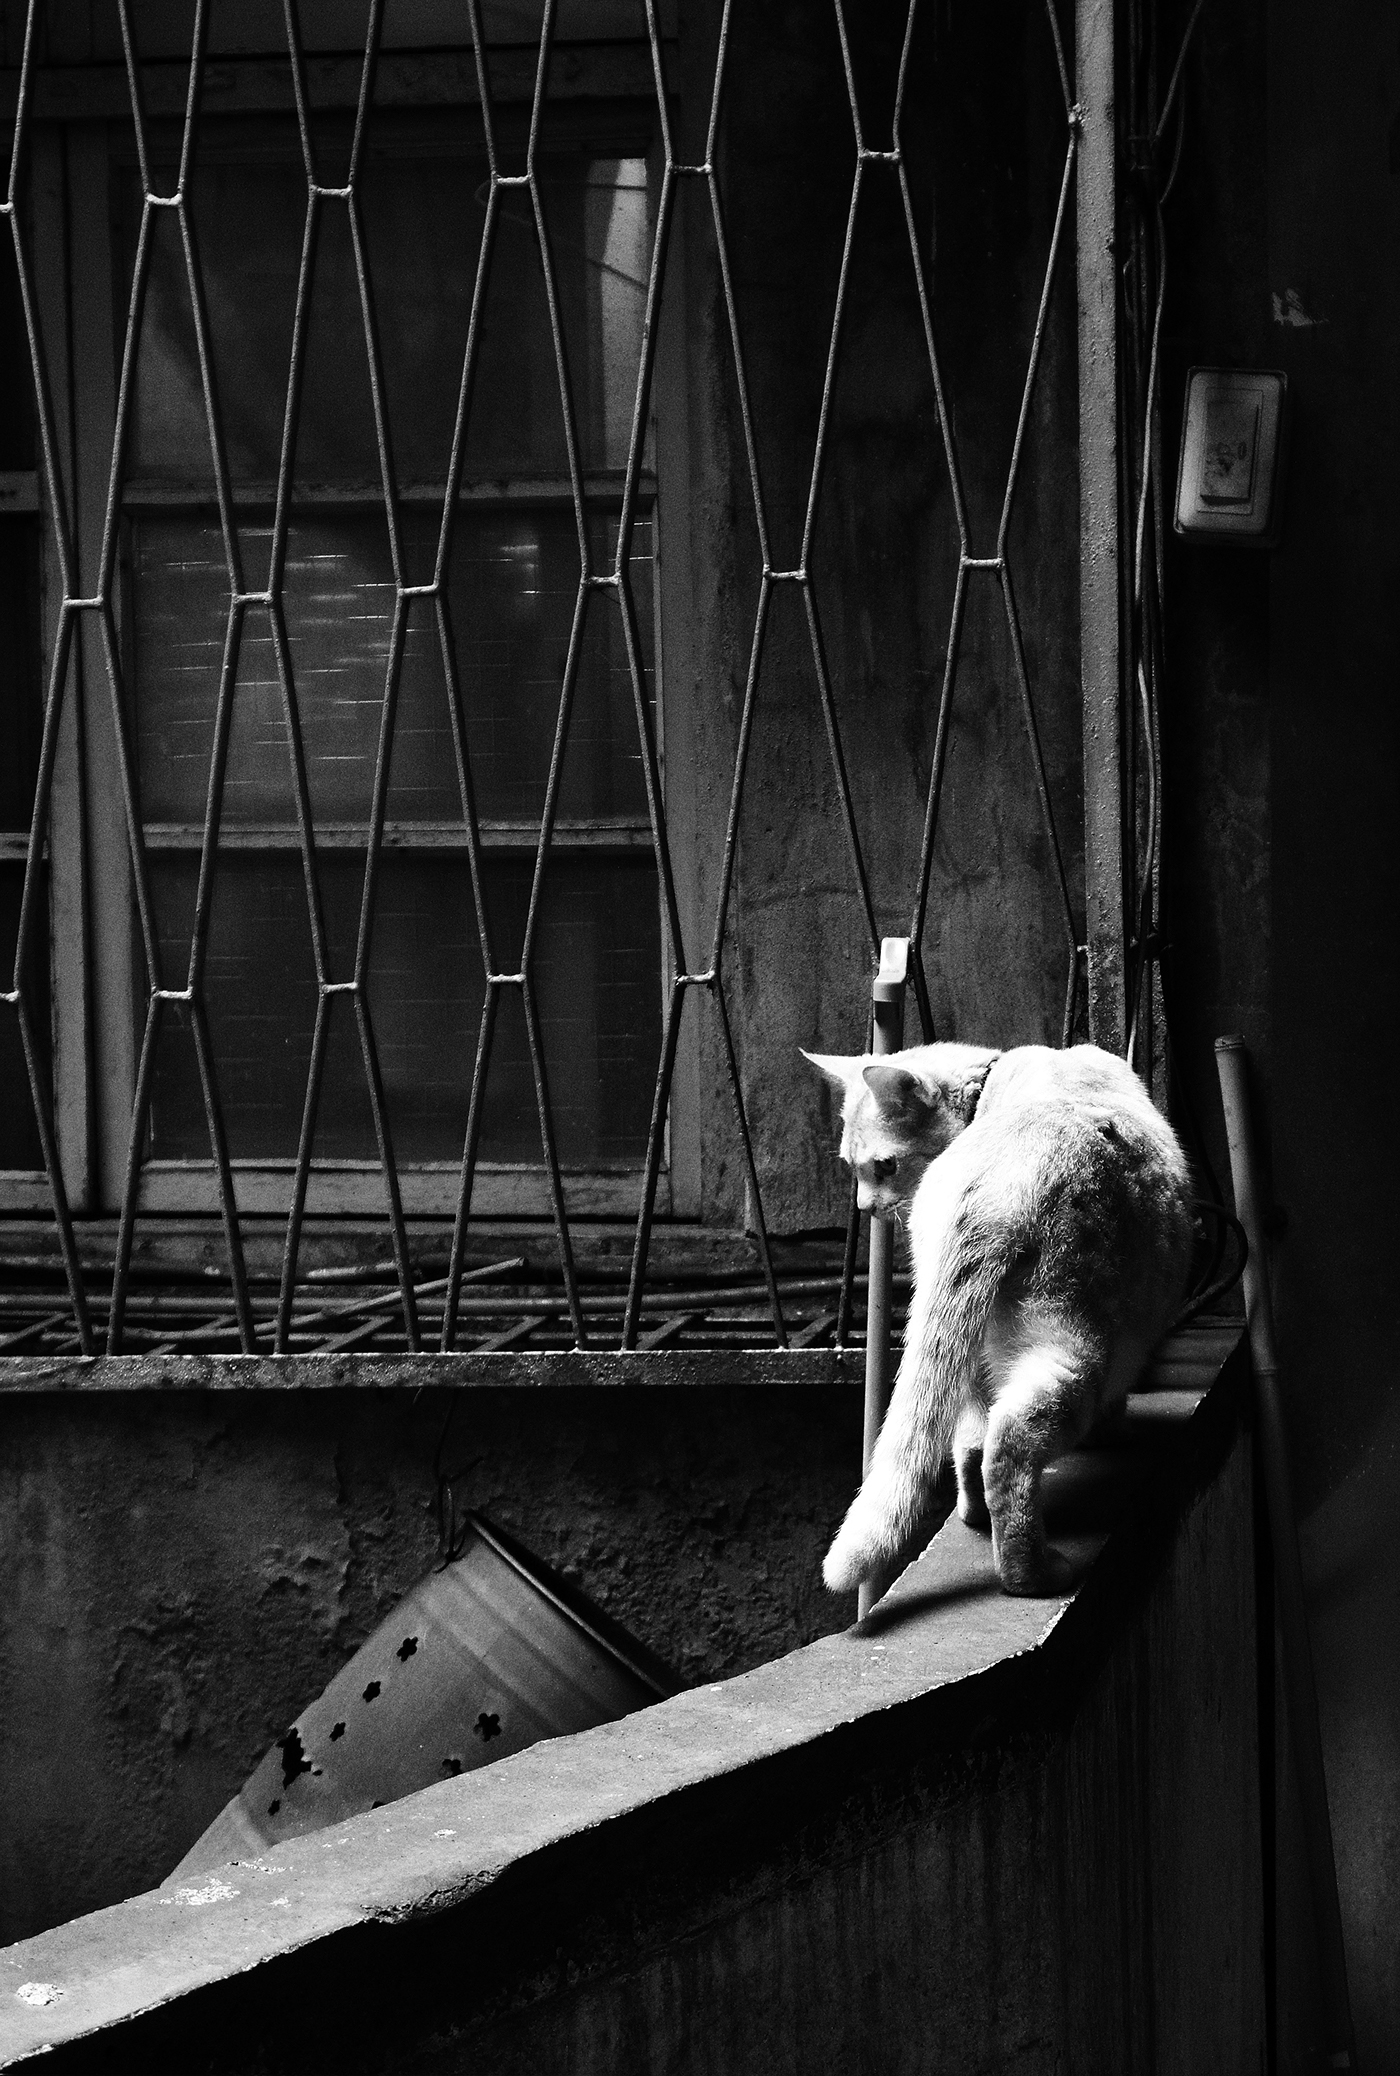 Cat stray life city animal mix photo abandon homeless Outdoor